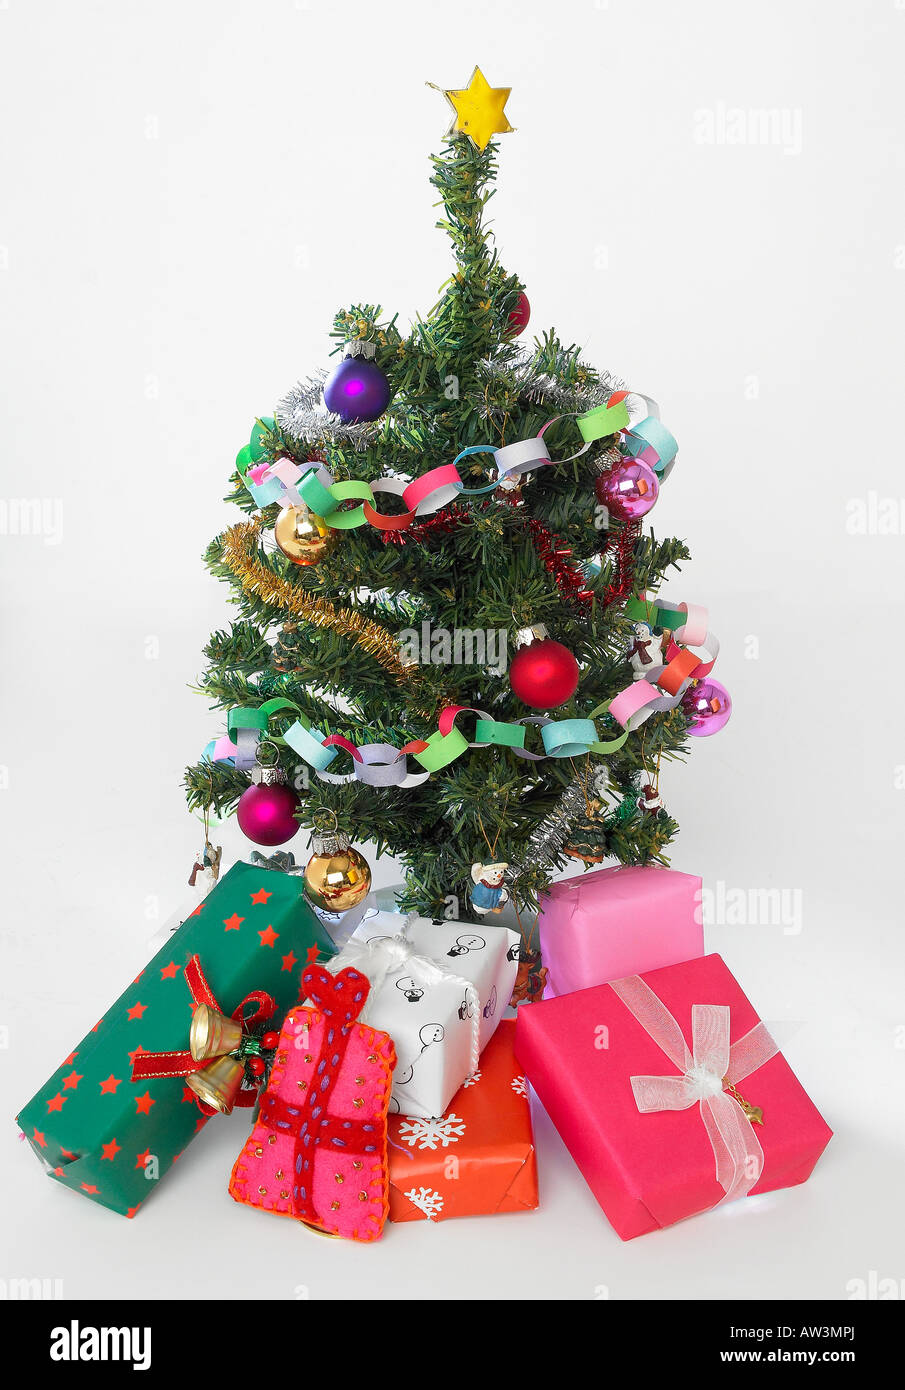 Miniatur-Weihnachtsbaum und Geschenke Stockfotografie - Alamy